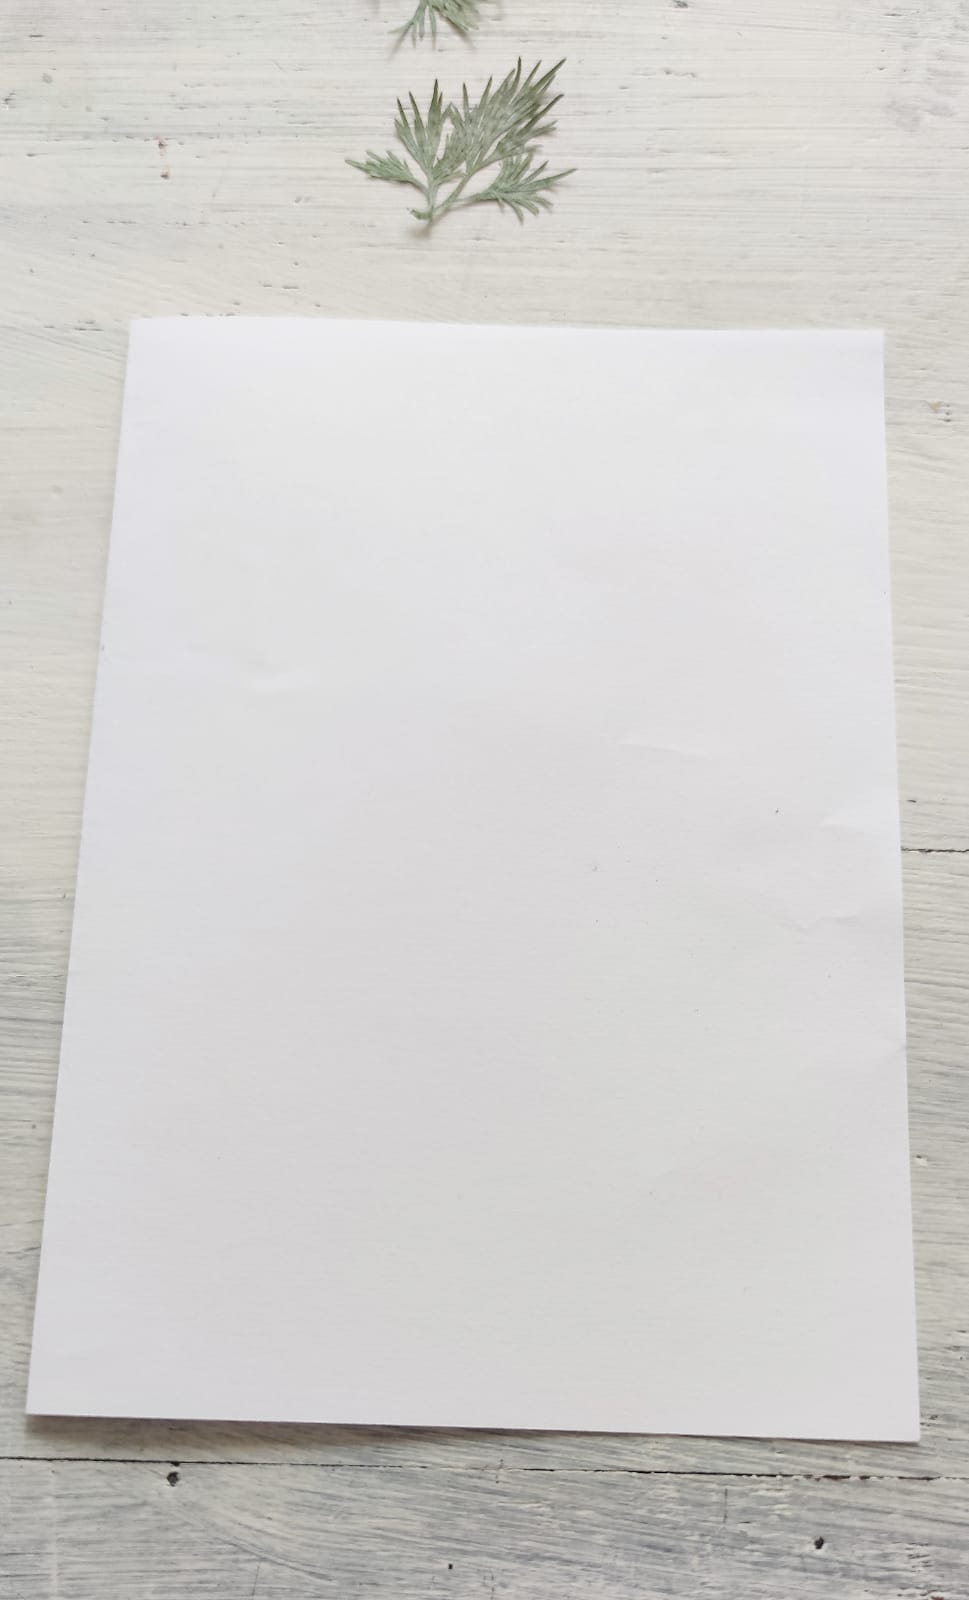 Bild zum Schritt 2 für die Kinder-Beschäftigung: 'Als erstes faltet ihr euer Blatt Papier in der Mitte.'